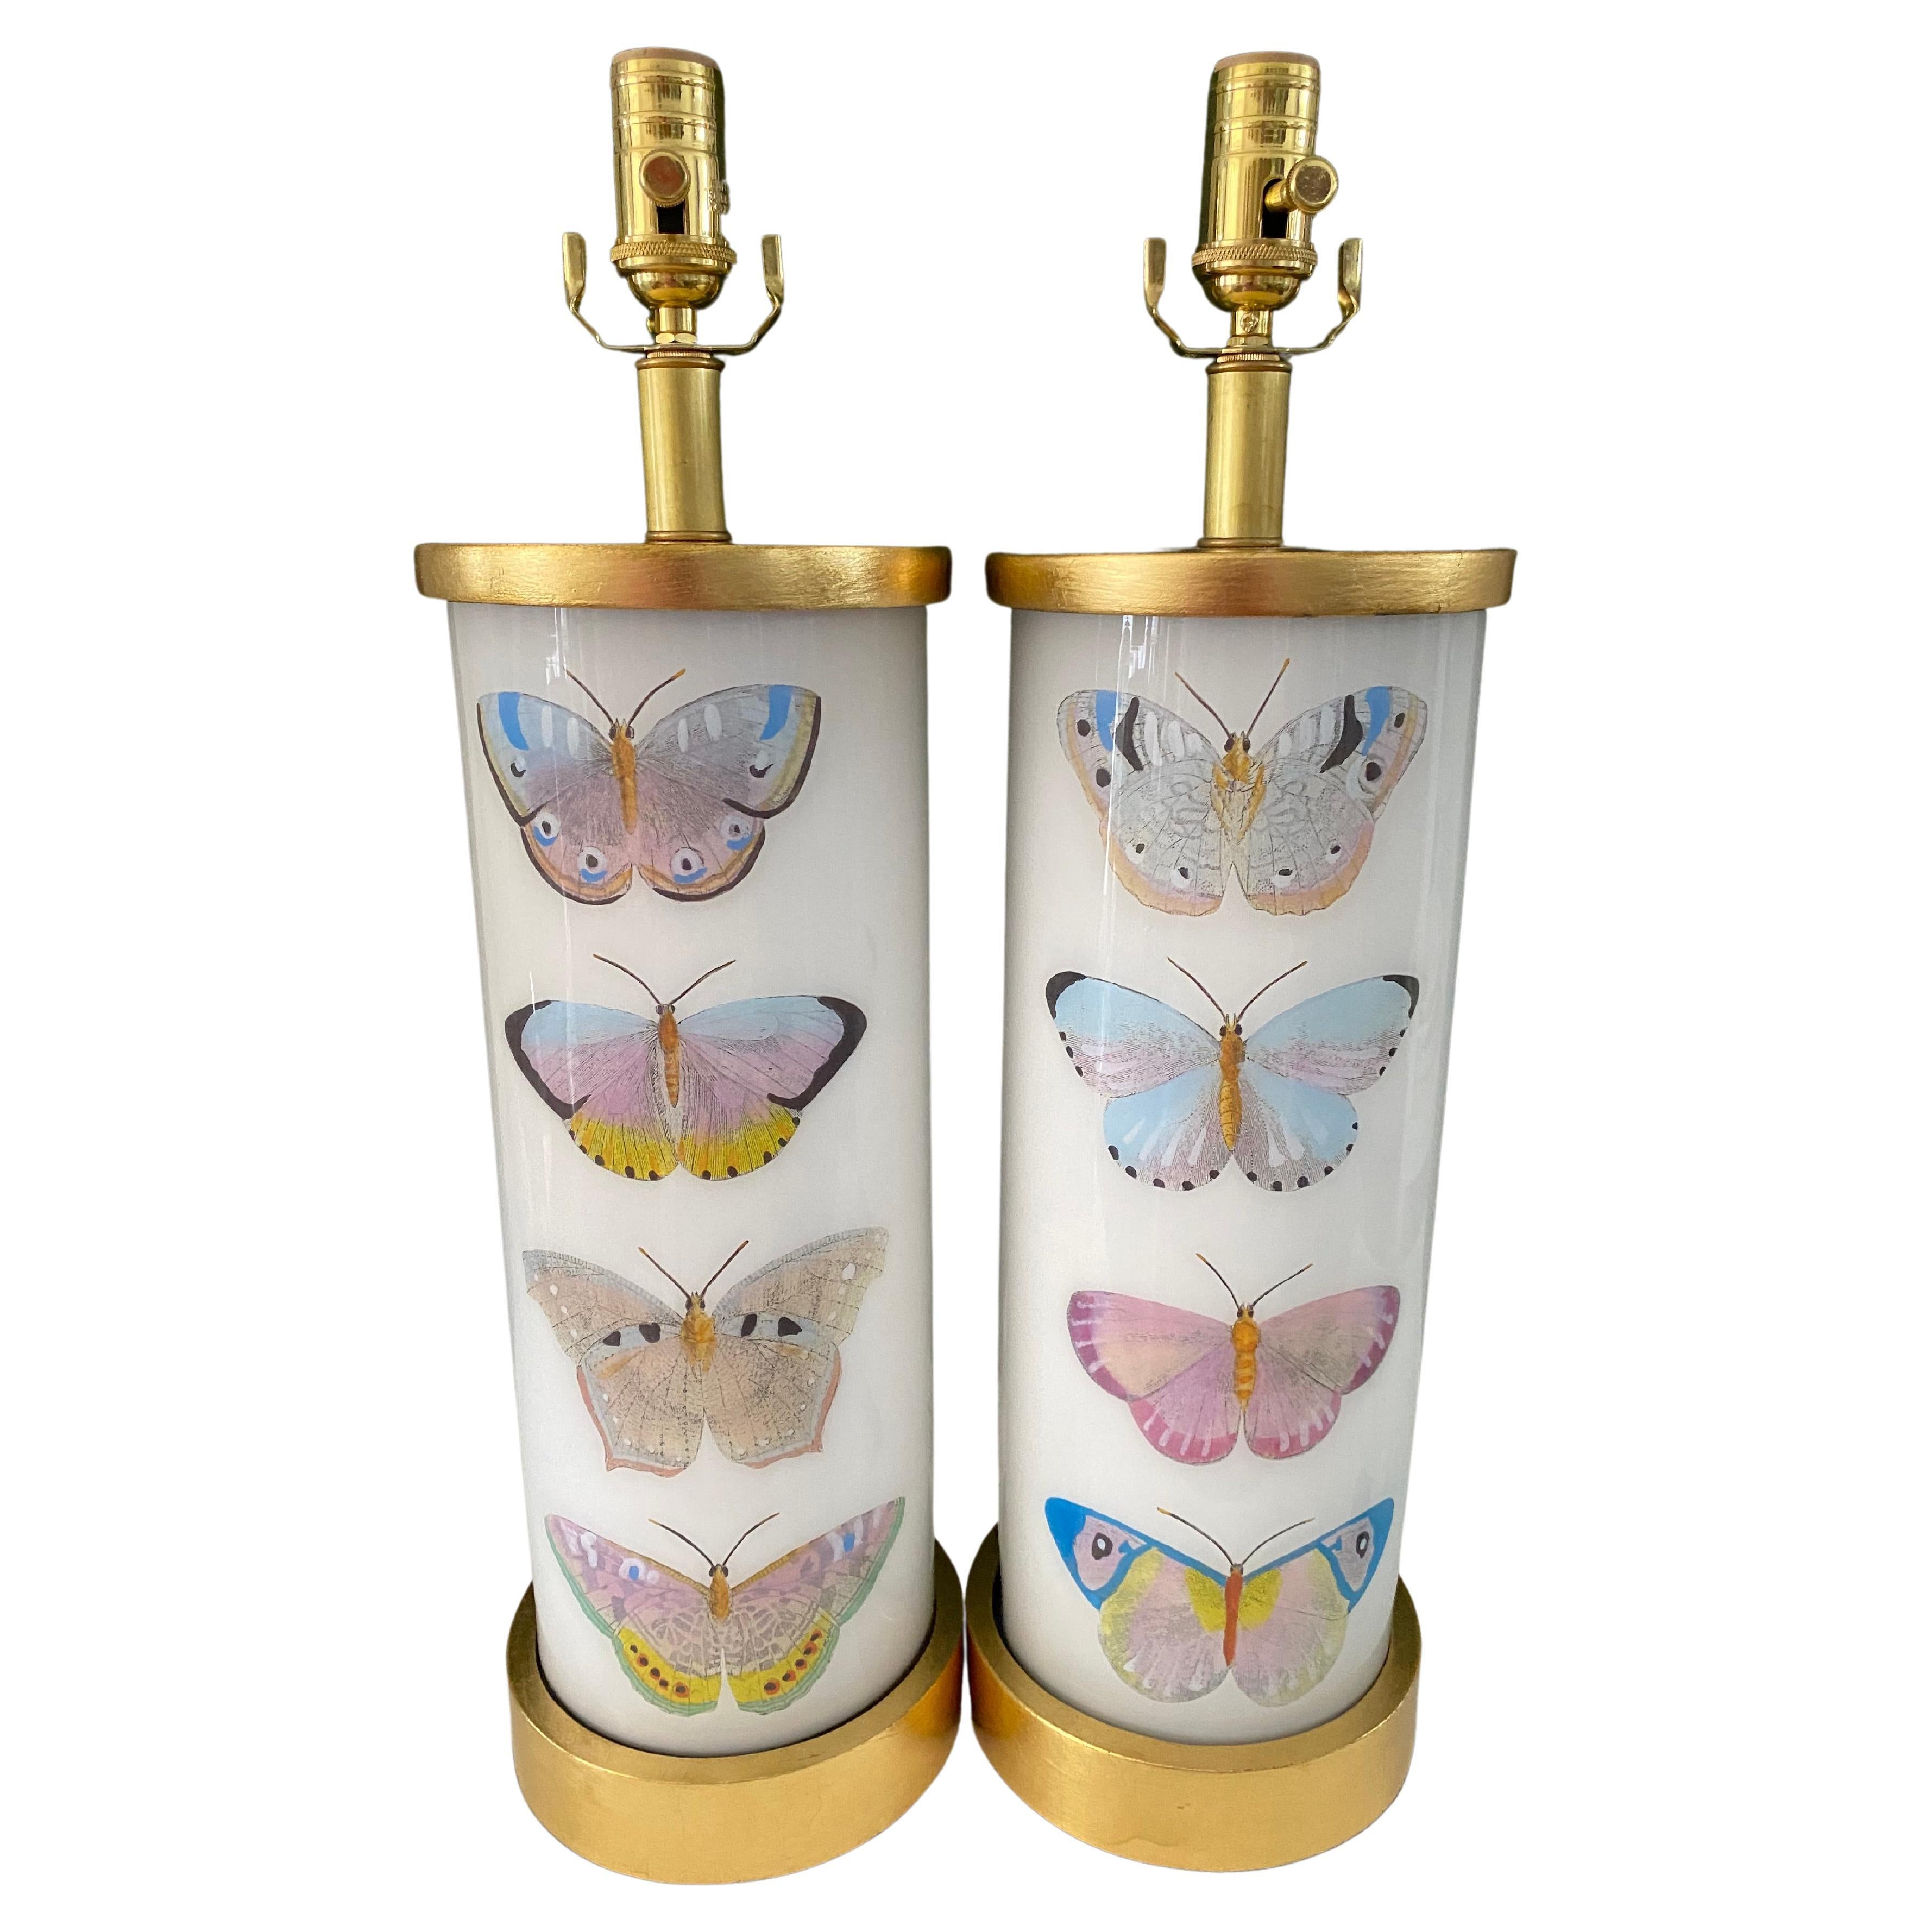 Liz Marsh Designs, Paar Decoupage-Schmetterlingslampen, Studie II, Lampen